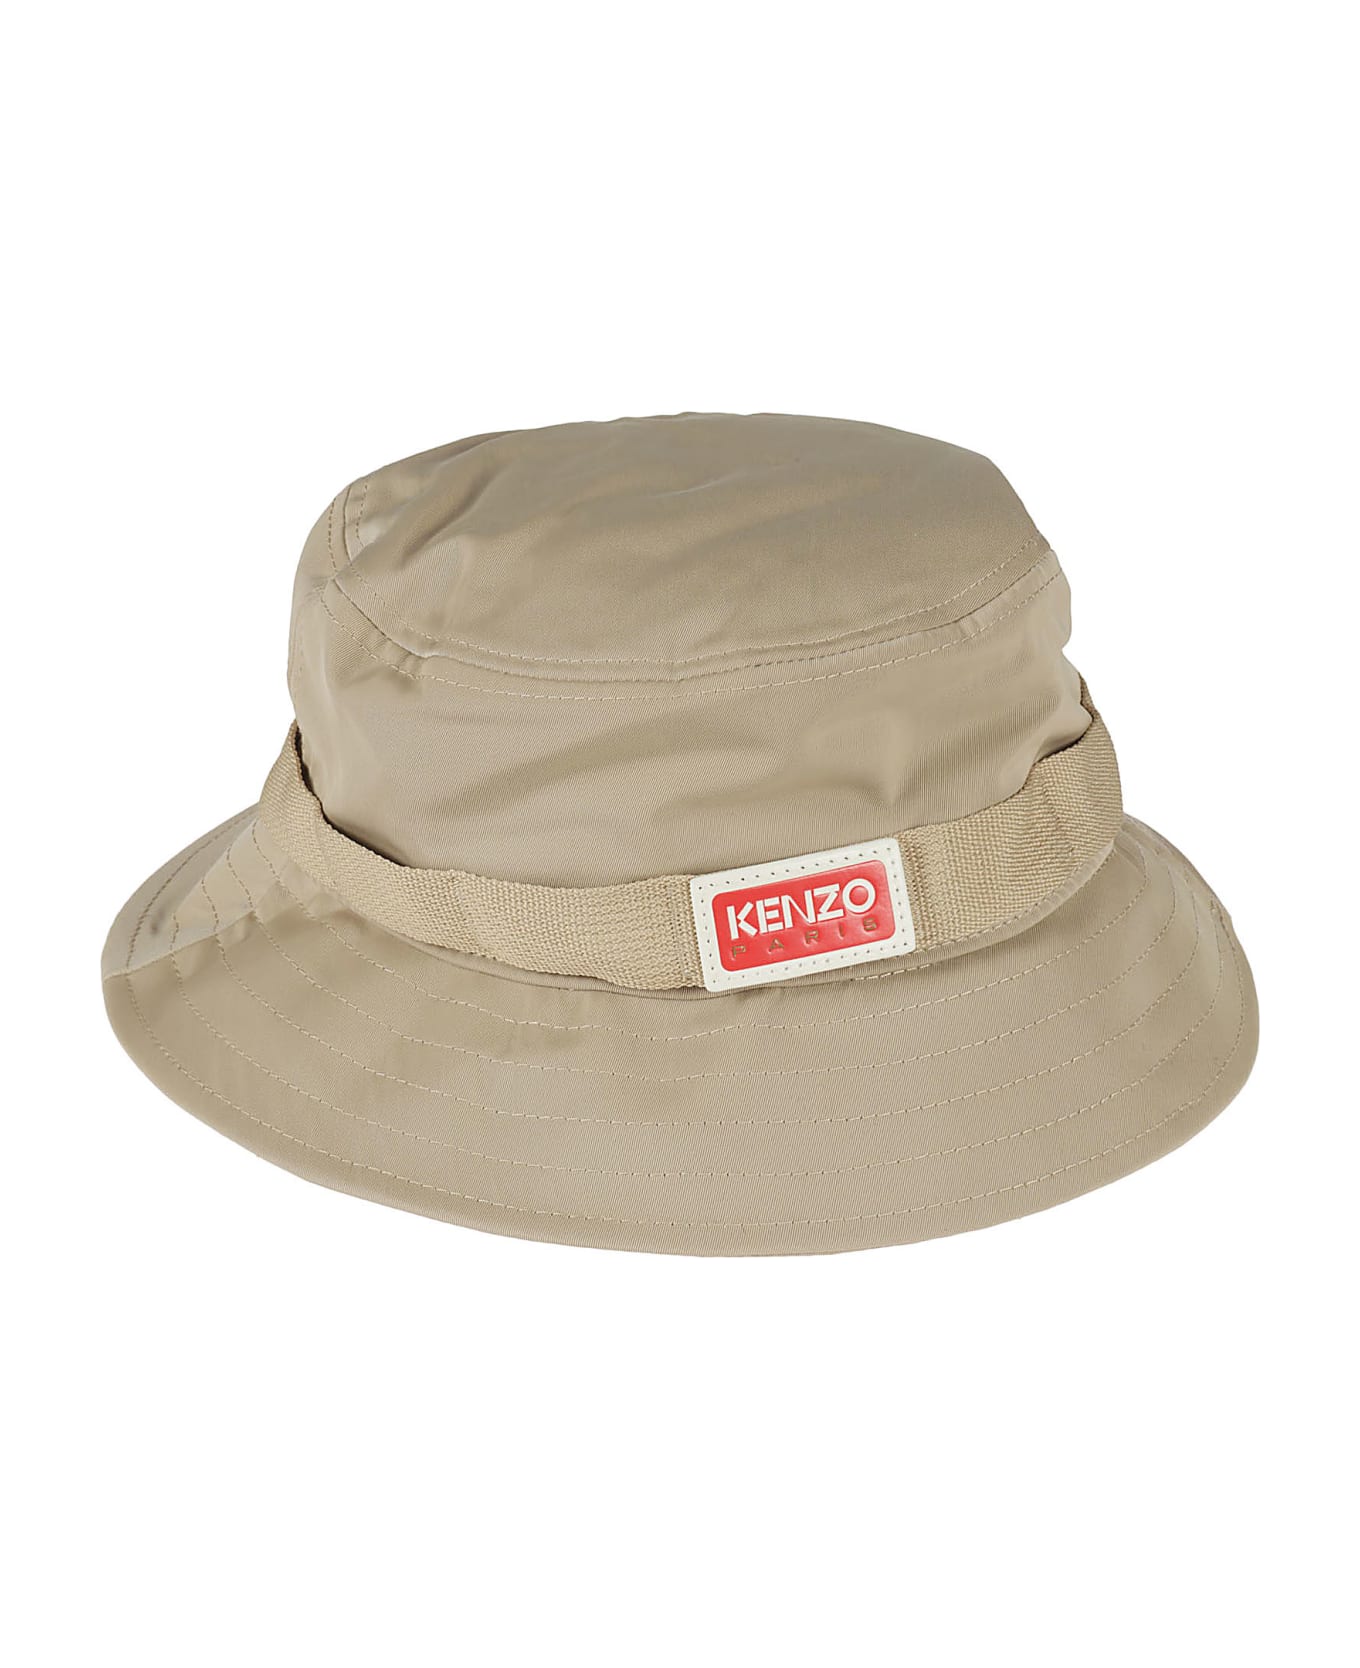 Kenzo Logo Strap Bucket Hat - Beige